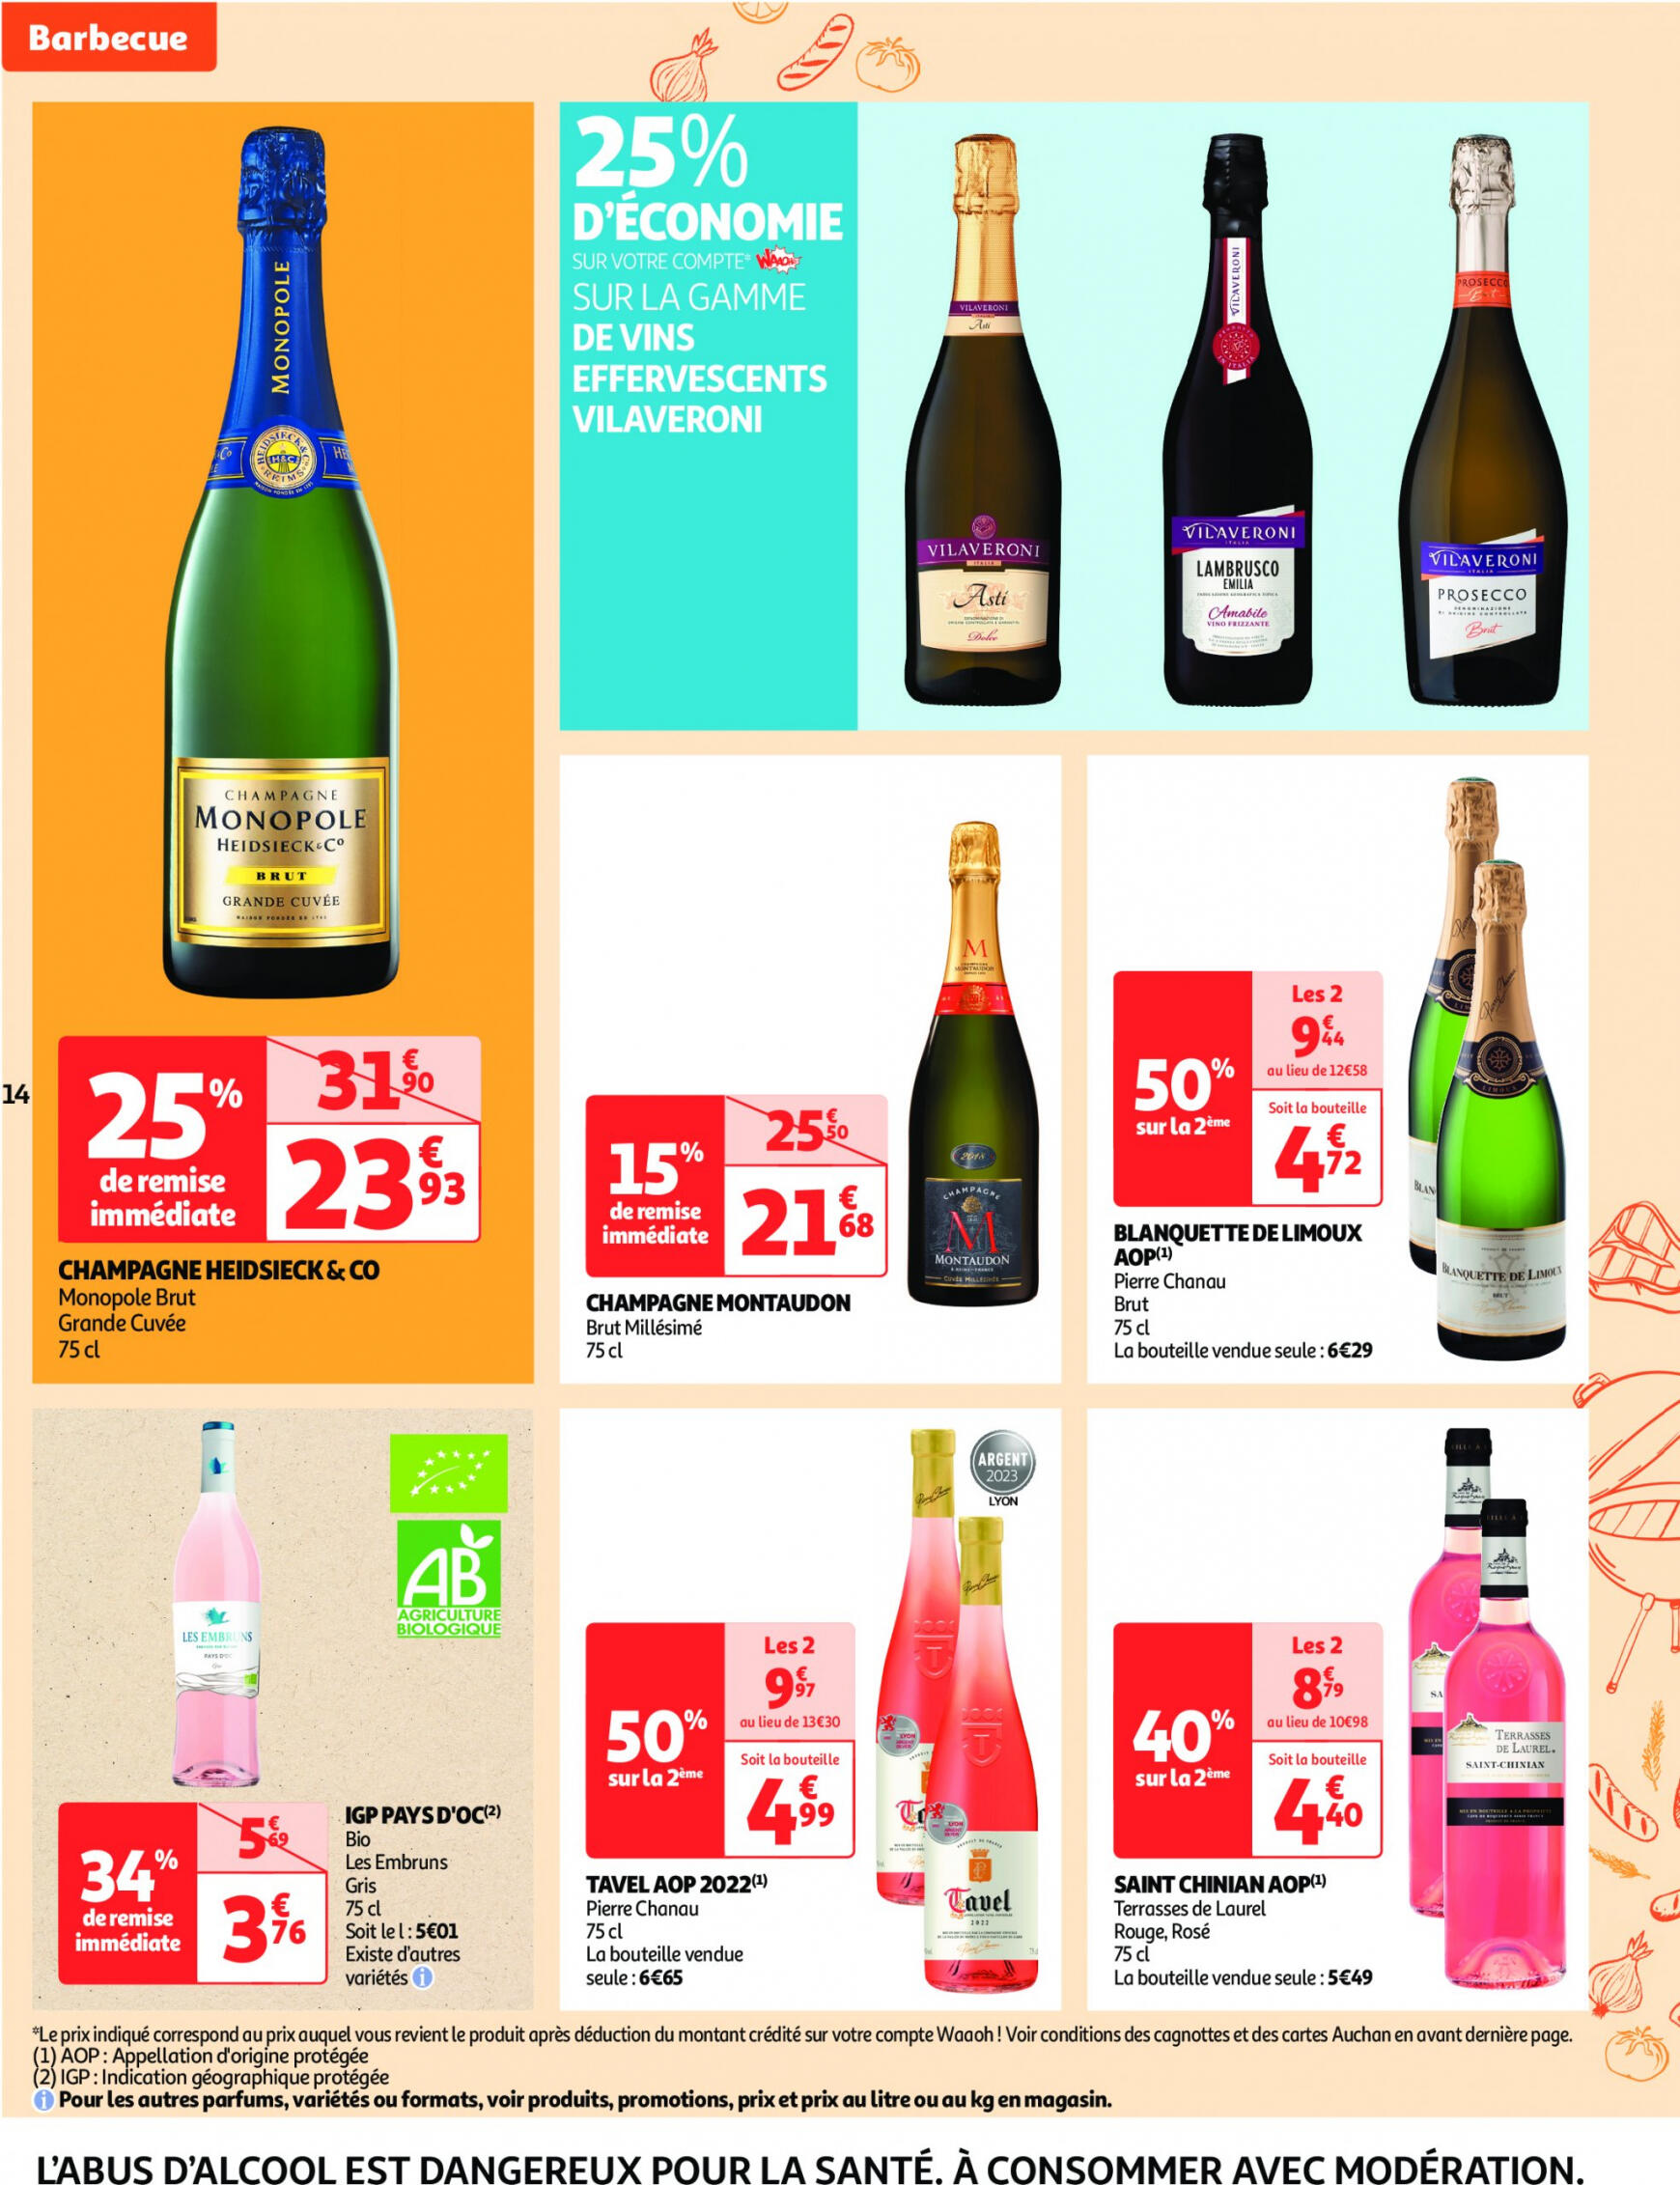 auchan - Auchan supermarché - Faites le plein de bonnes affaires folder huidig 22.05. - 26.05. - page: 14